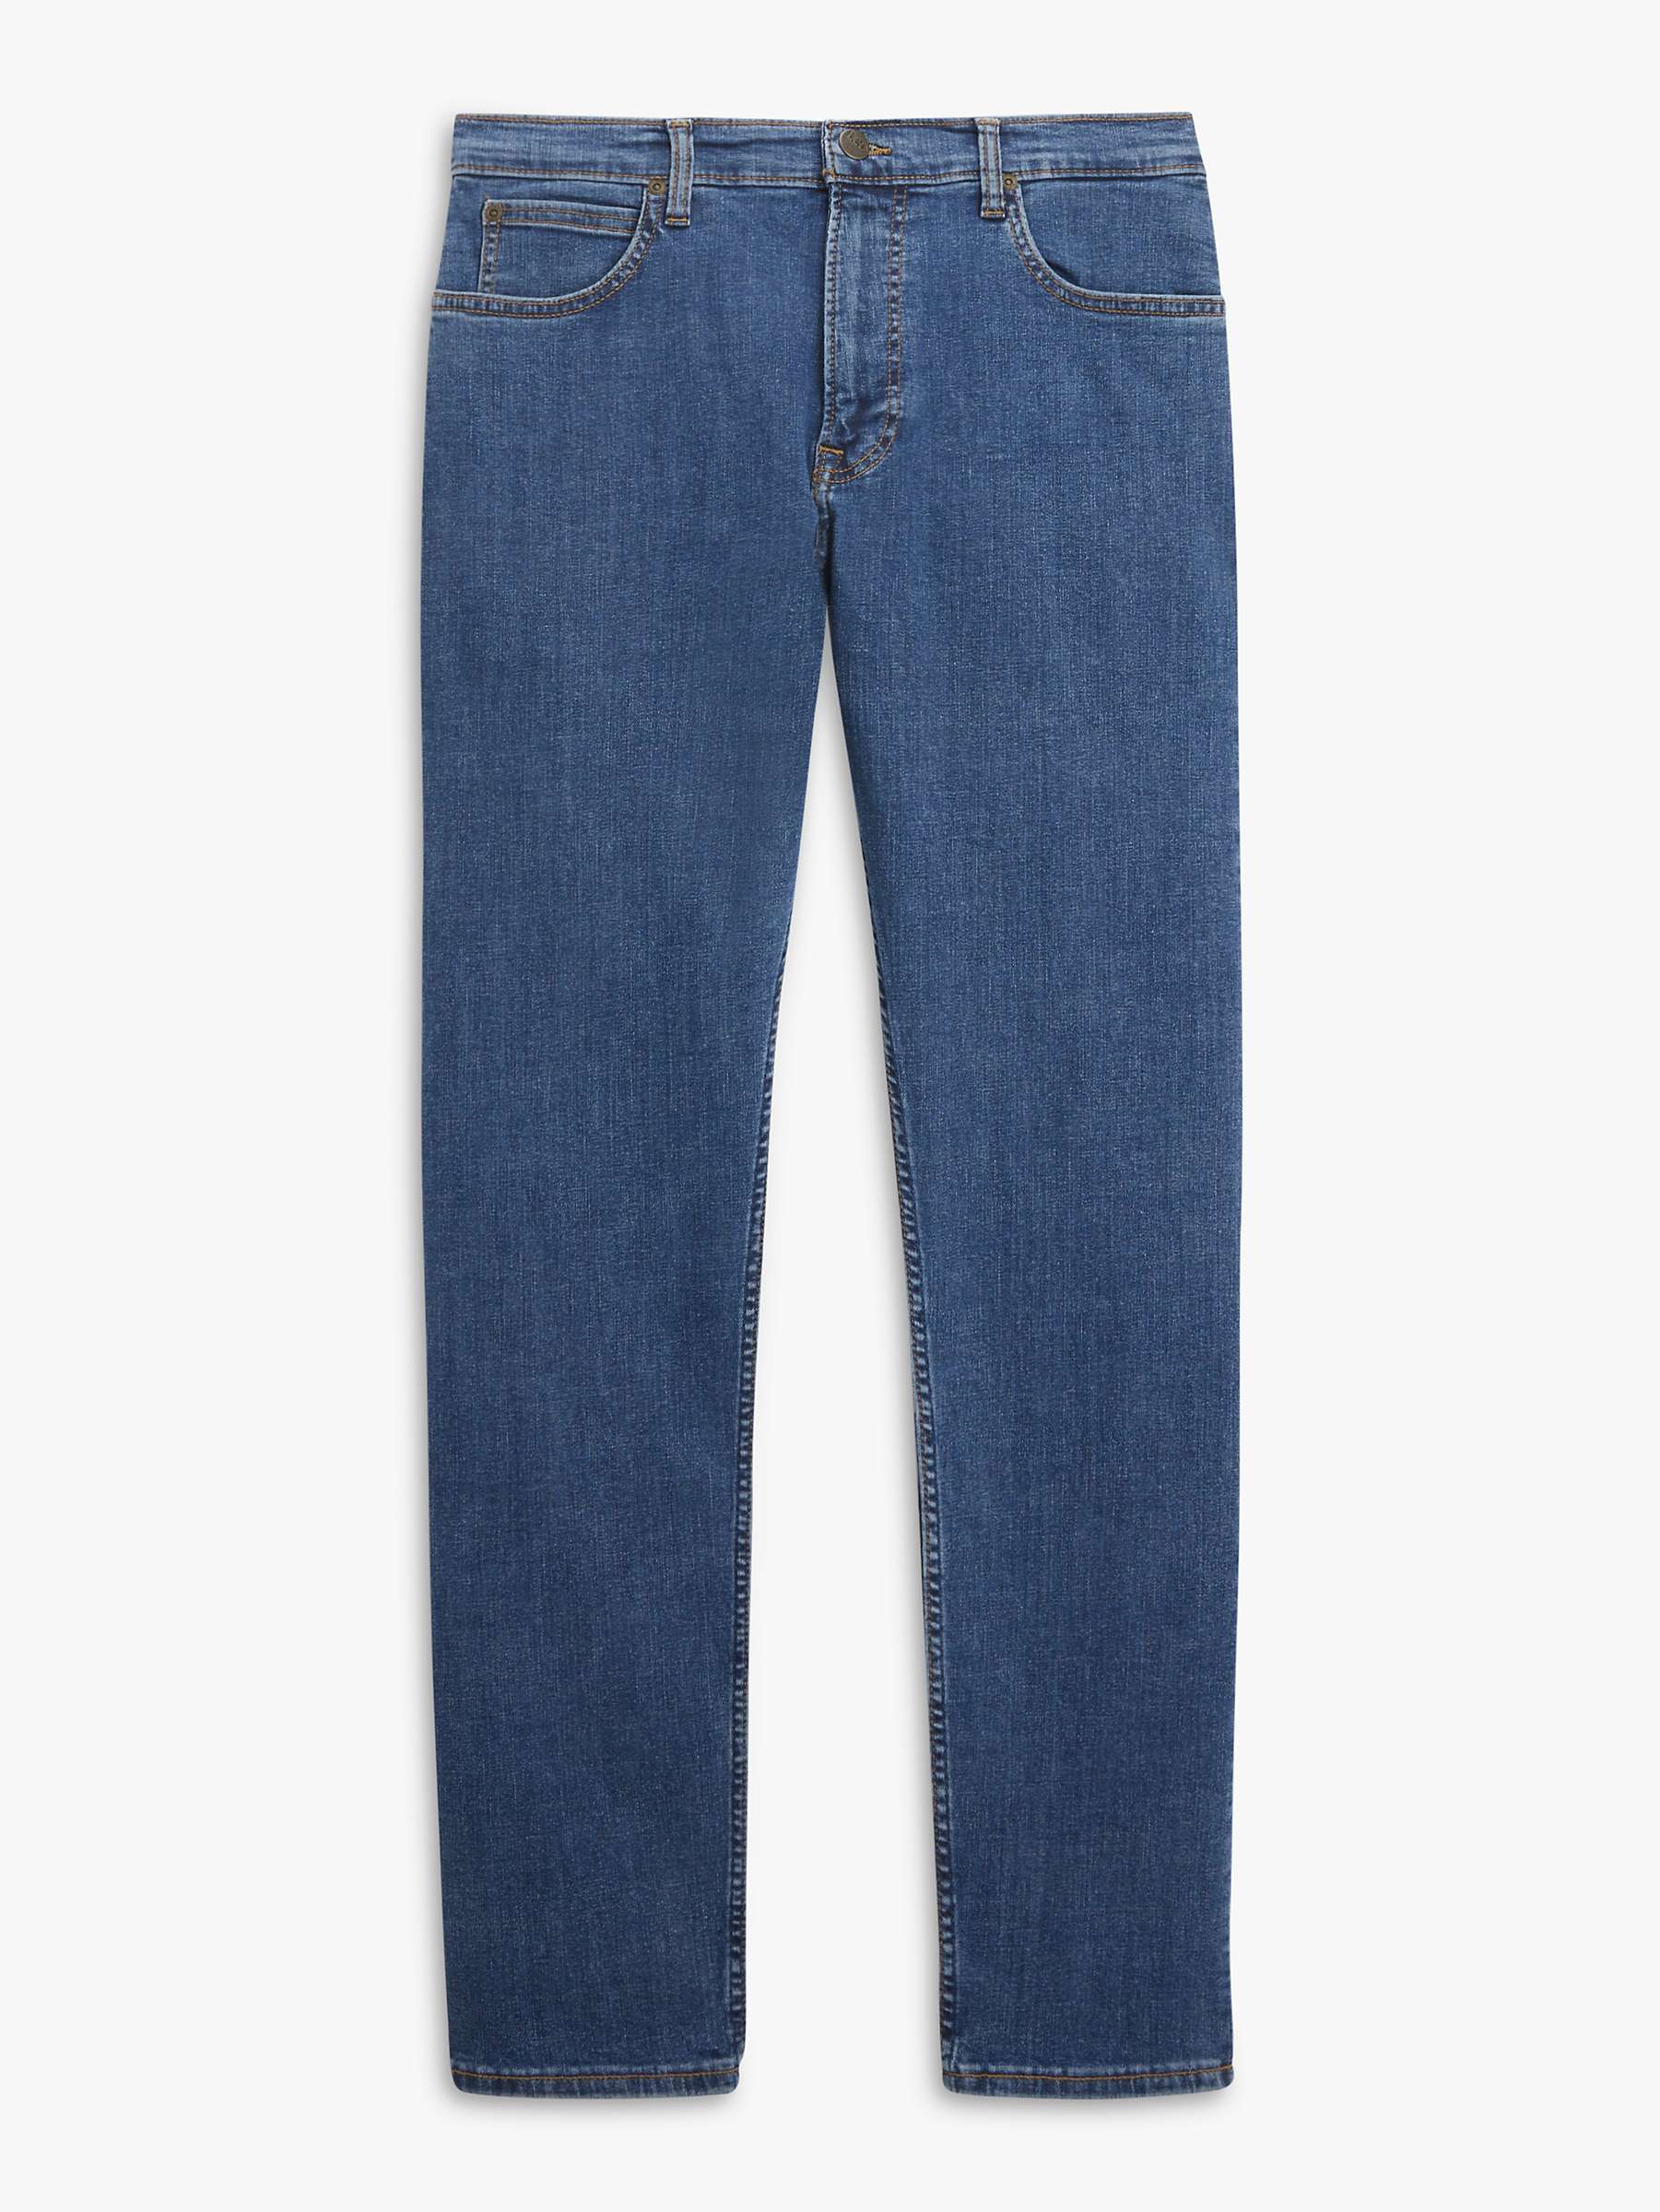 Buy Lee Rider Slim Fit Denim Jeans, Blue Online at johnlewis.com